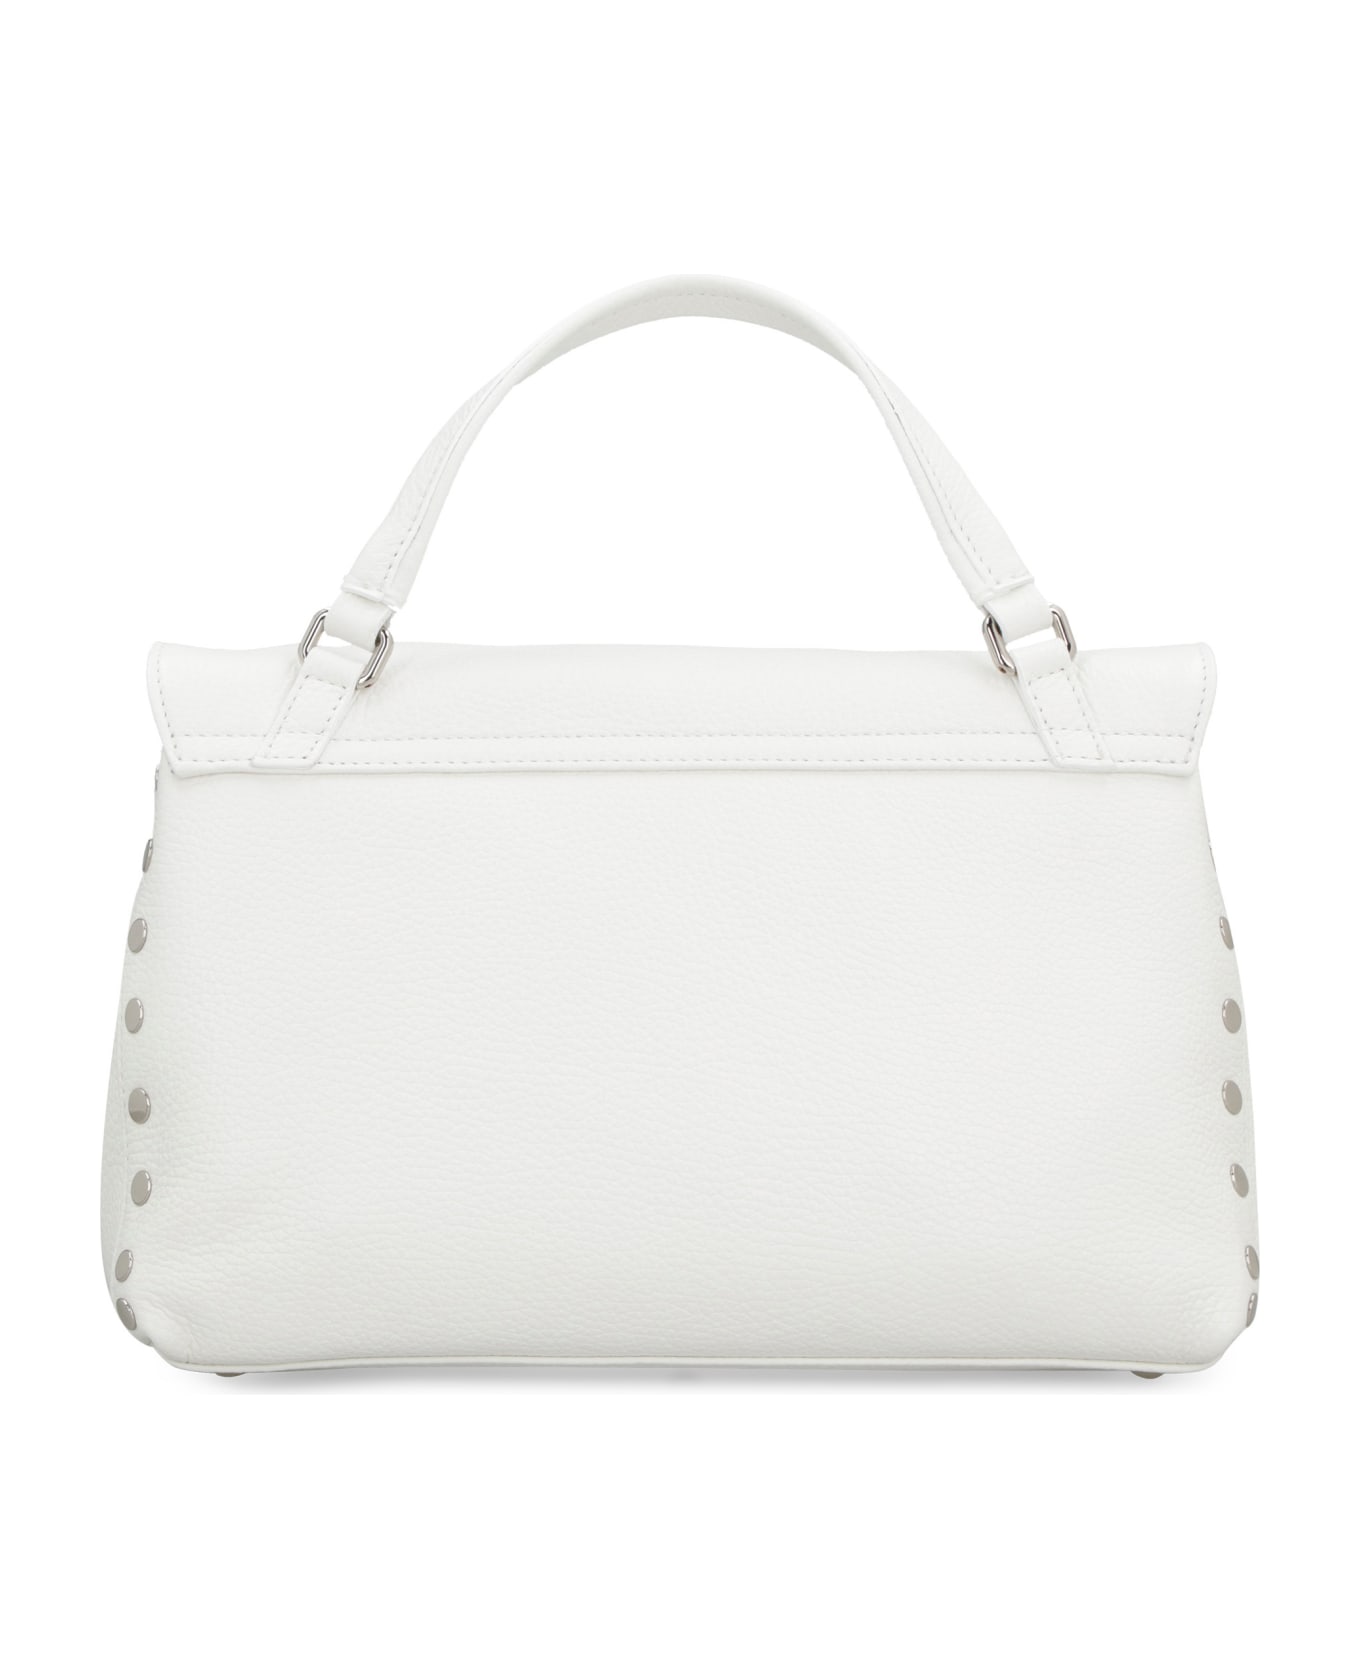 Zanellato Postina S Leather Handbag - Bianco Latte